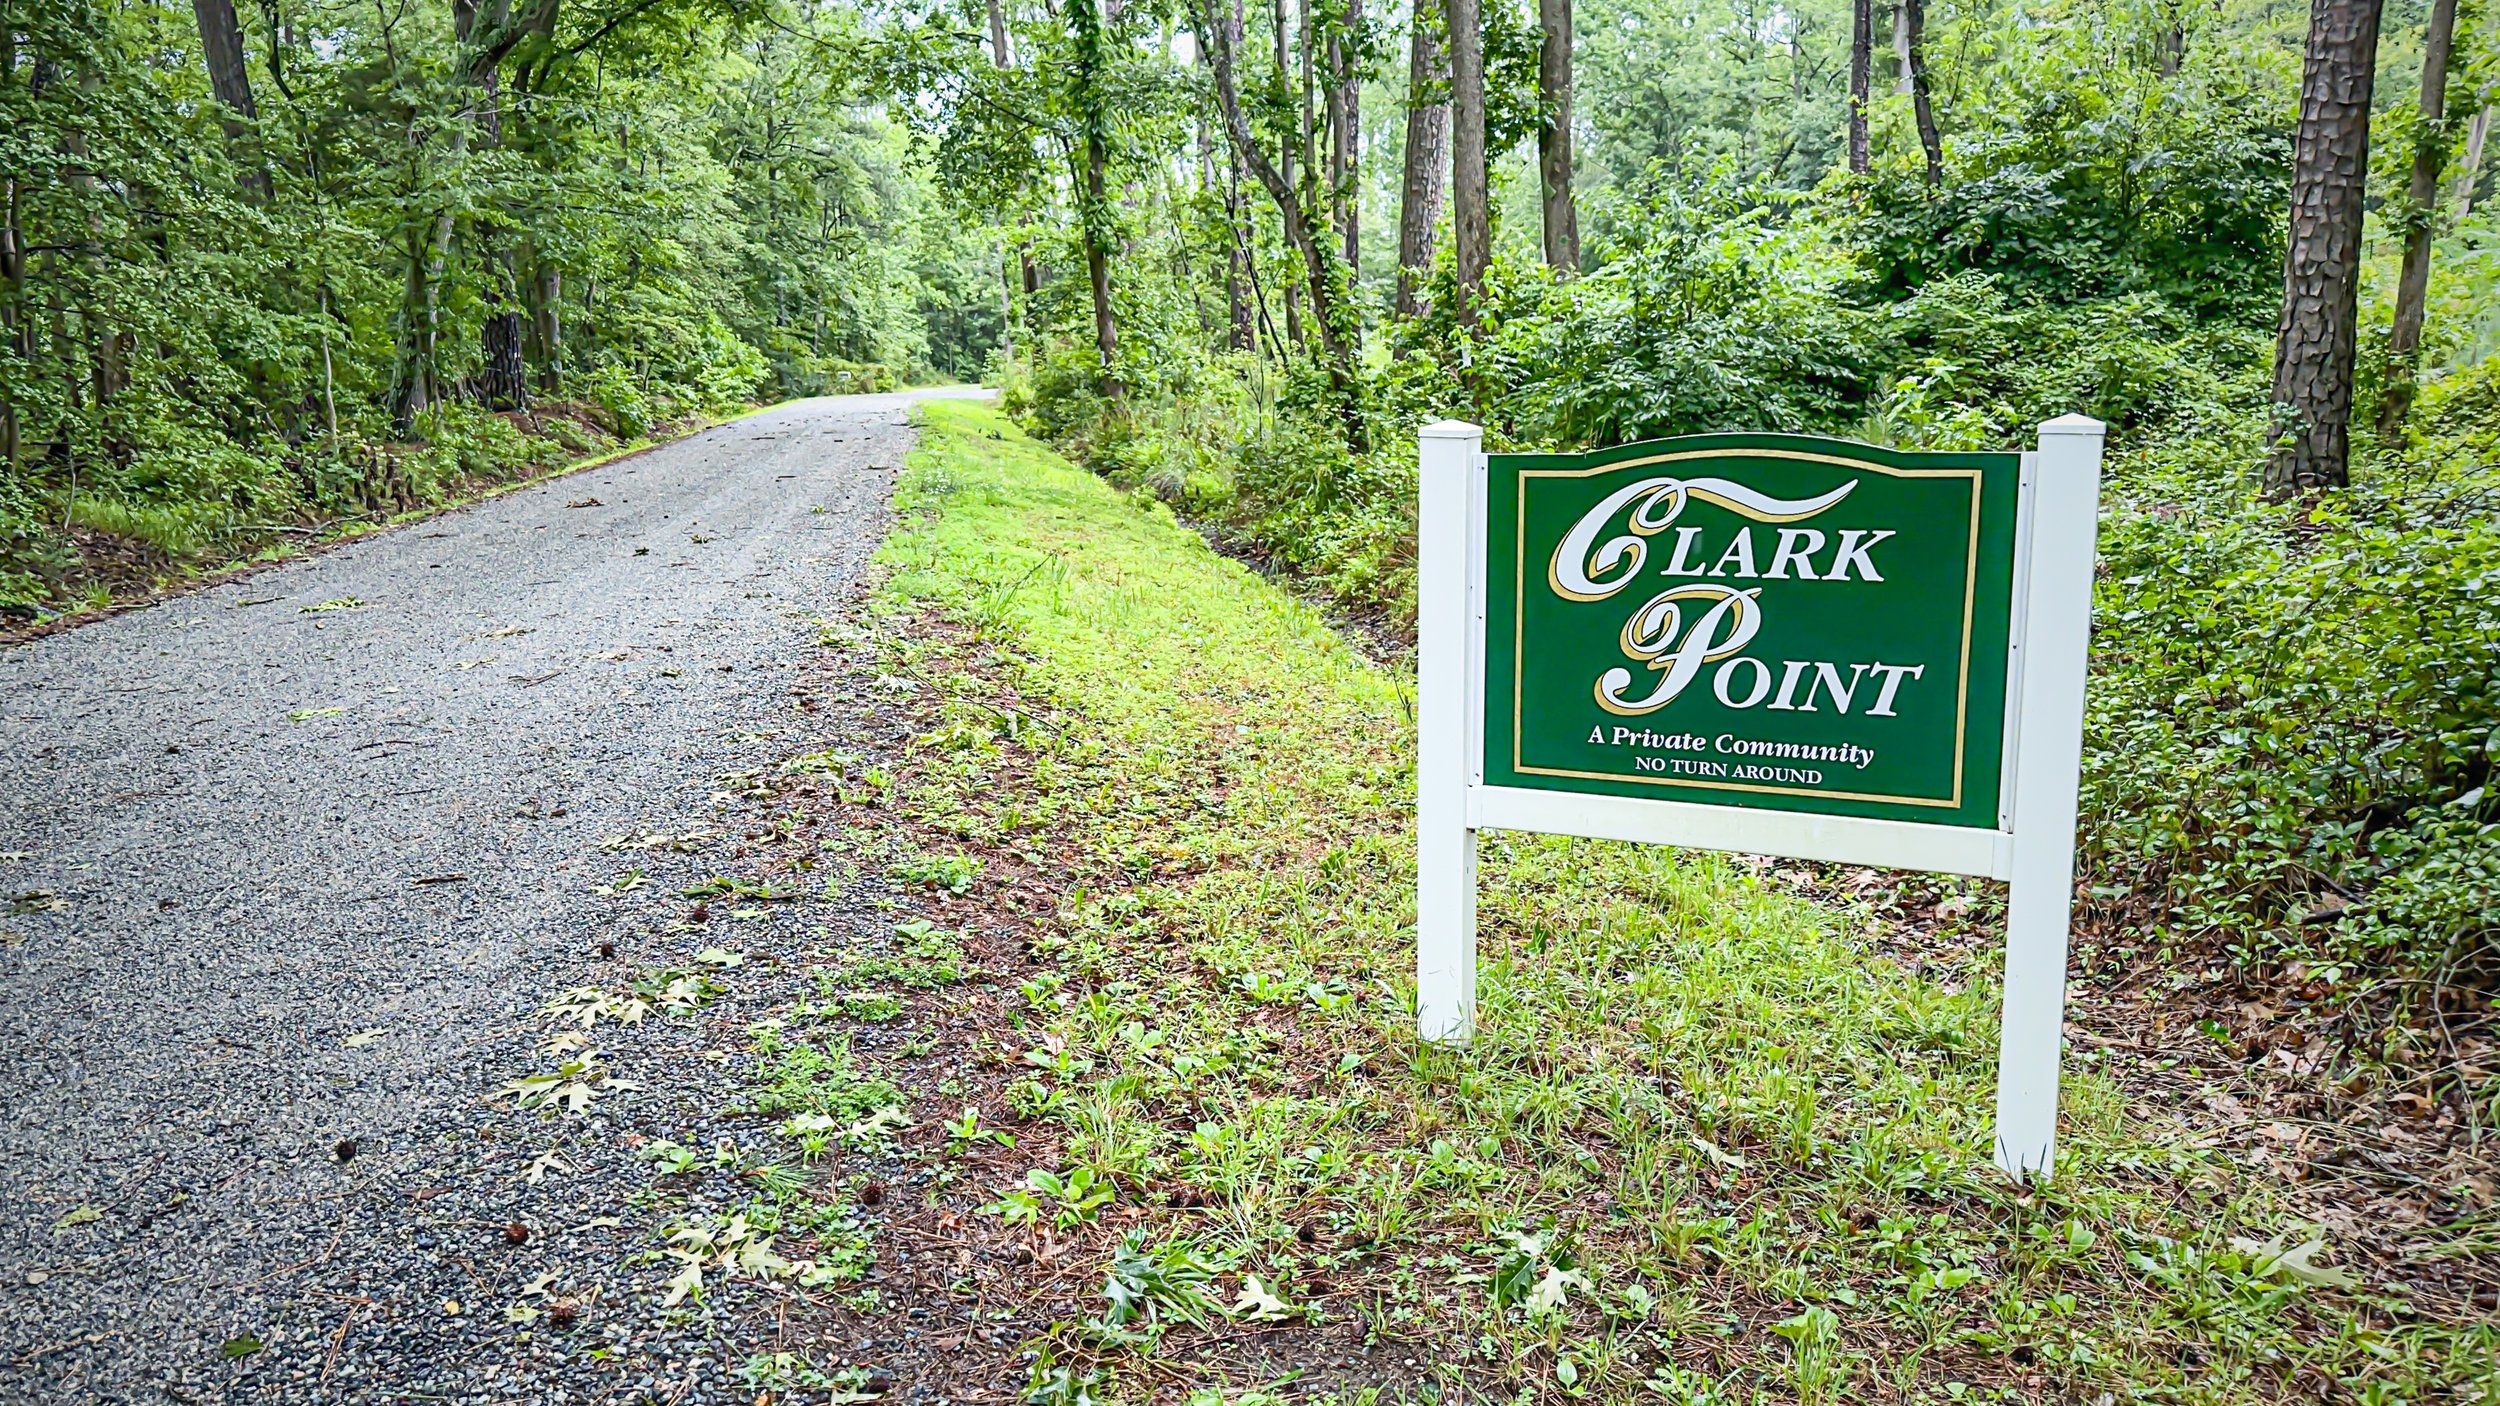 Clark Point Sign.jpg